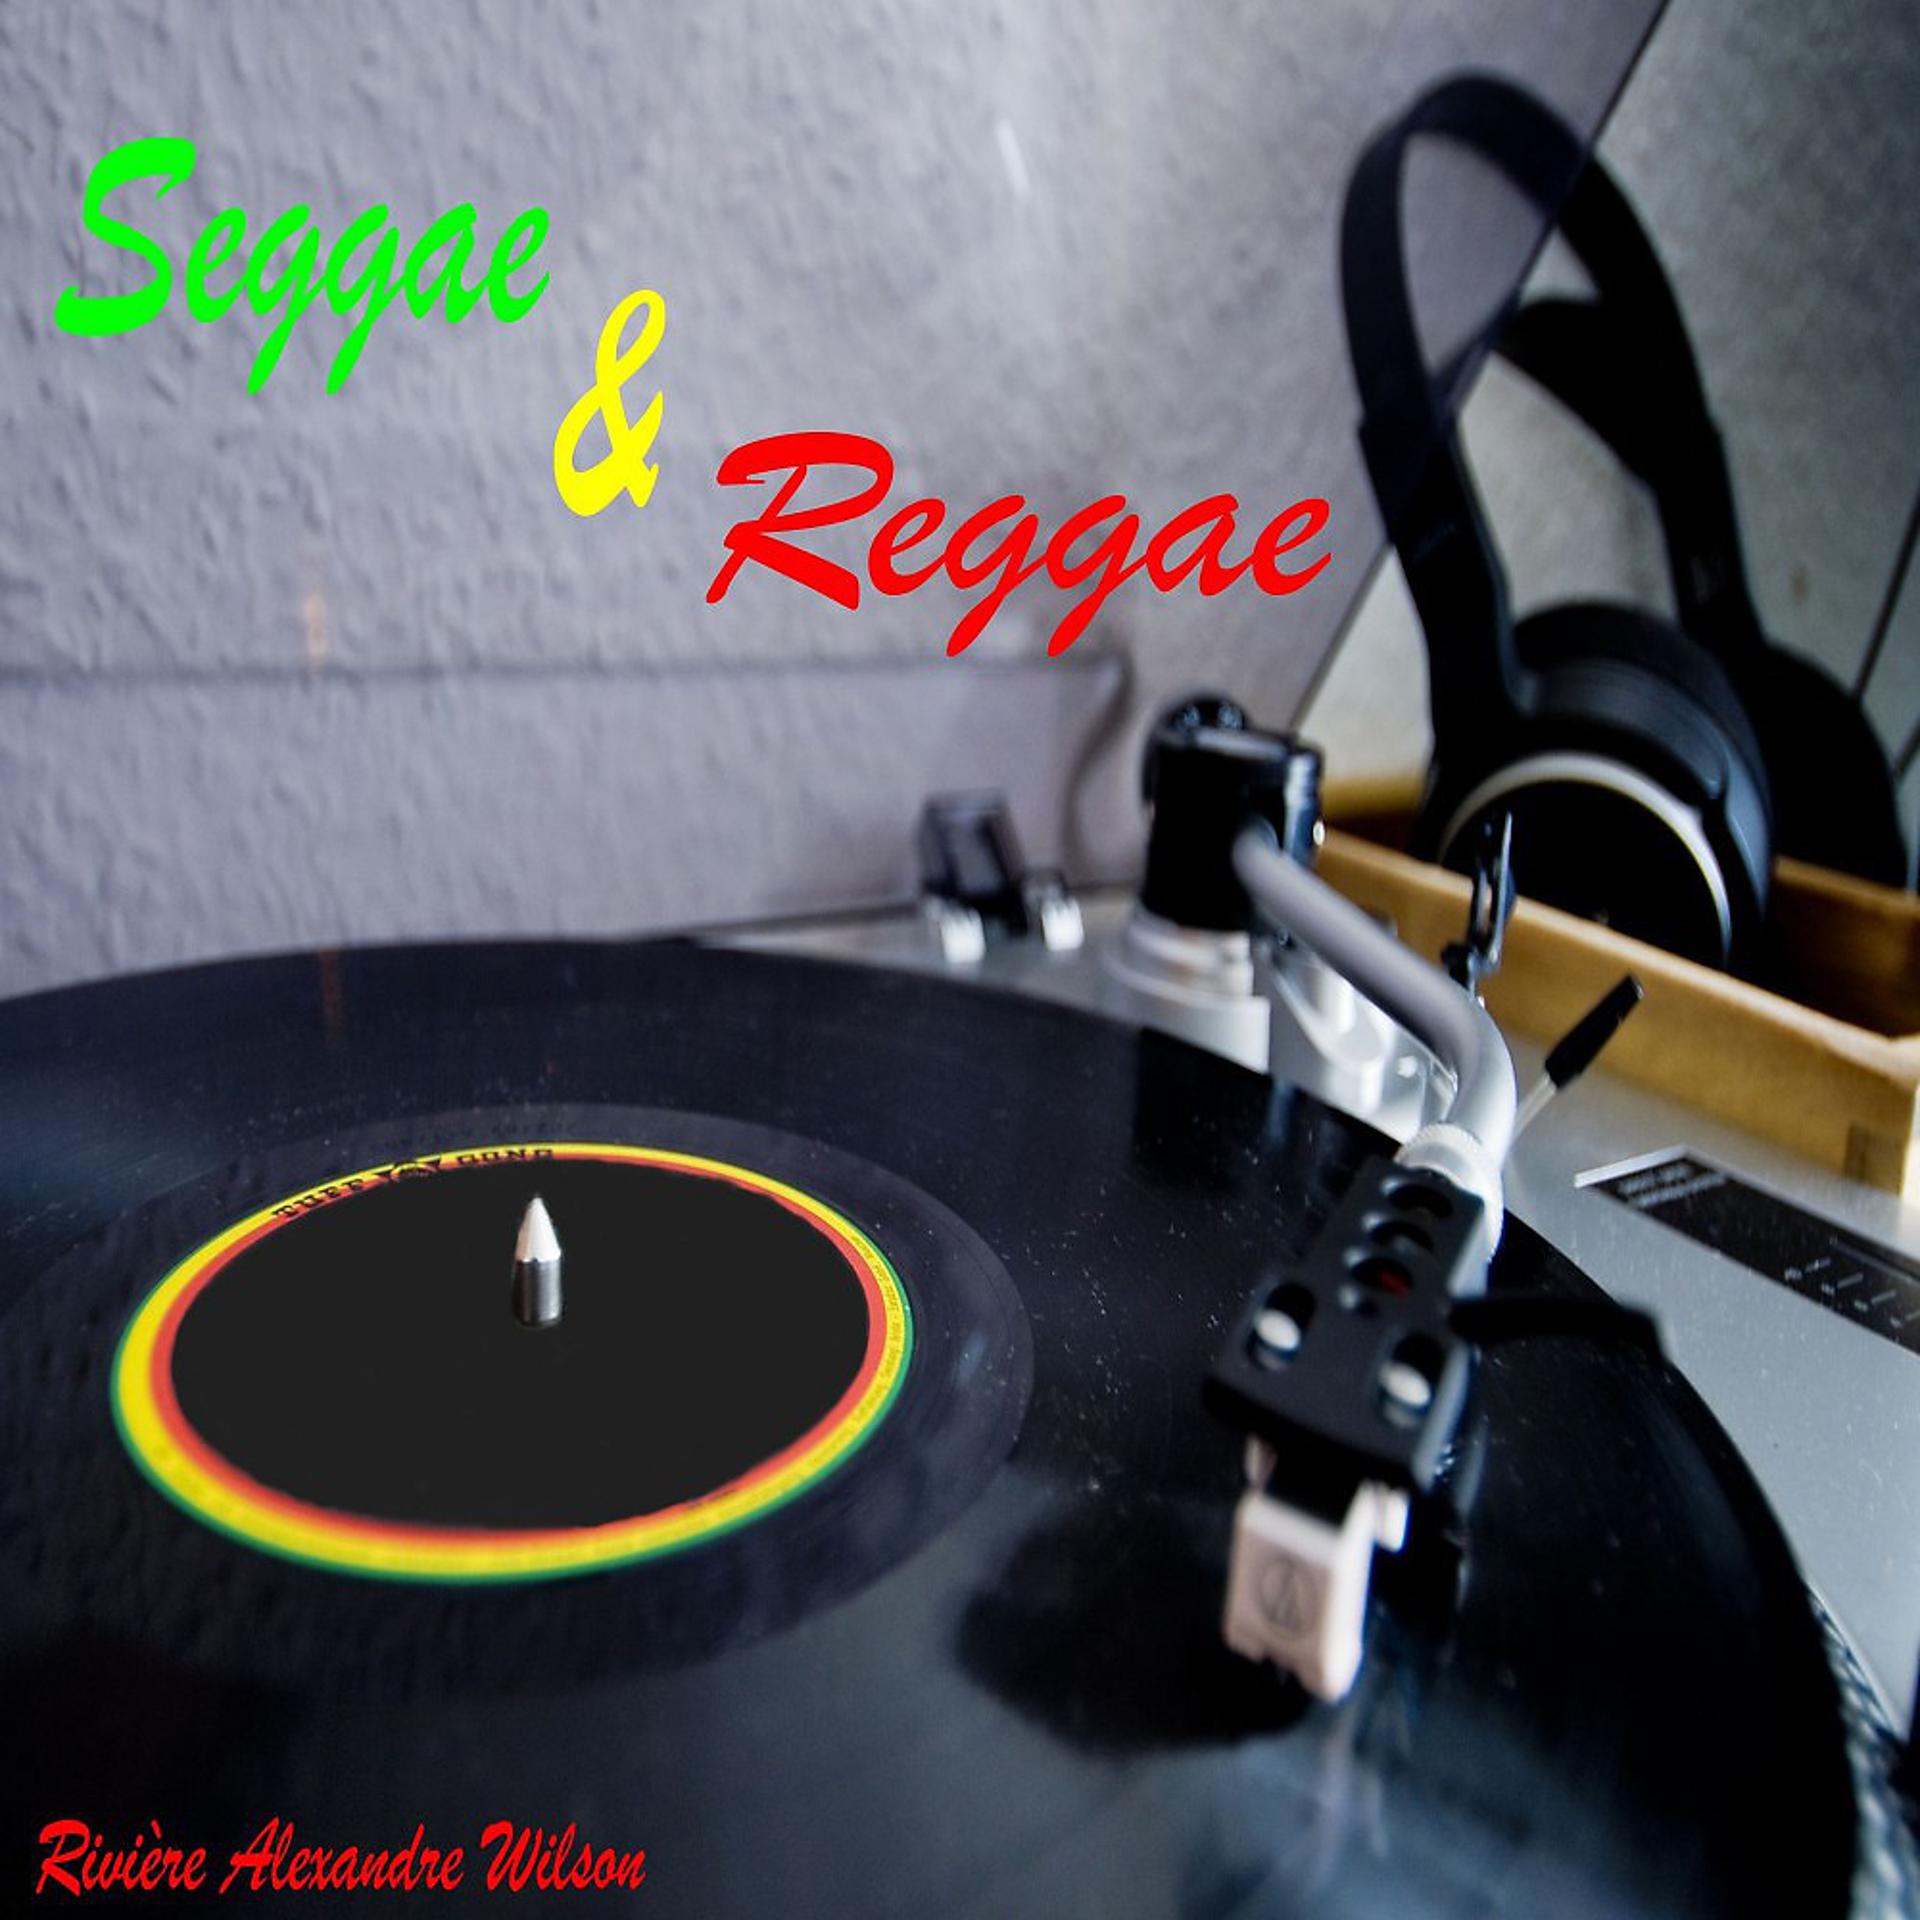 Постер альбома Seggae & Reggae